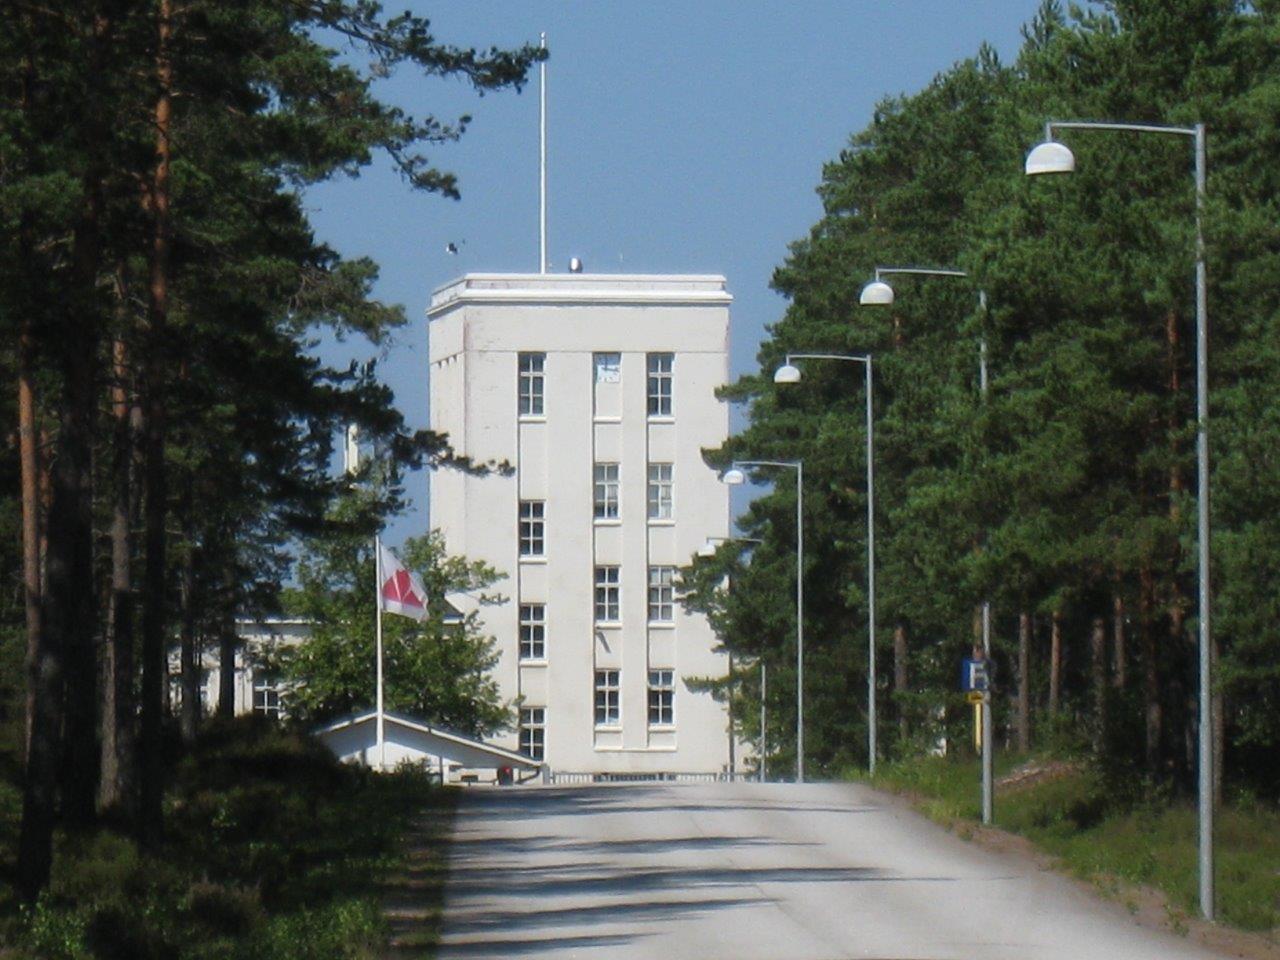 Kontorshuset i ändan av uppfartsvägen till fabriksområdet. Museovirasto / Museiverket 2018